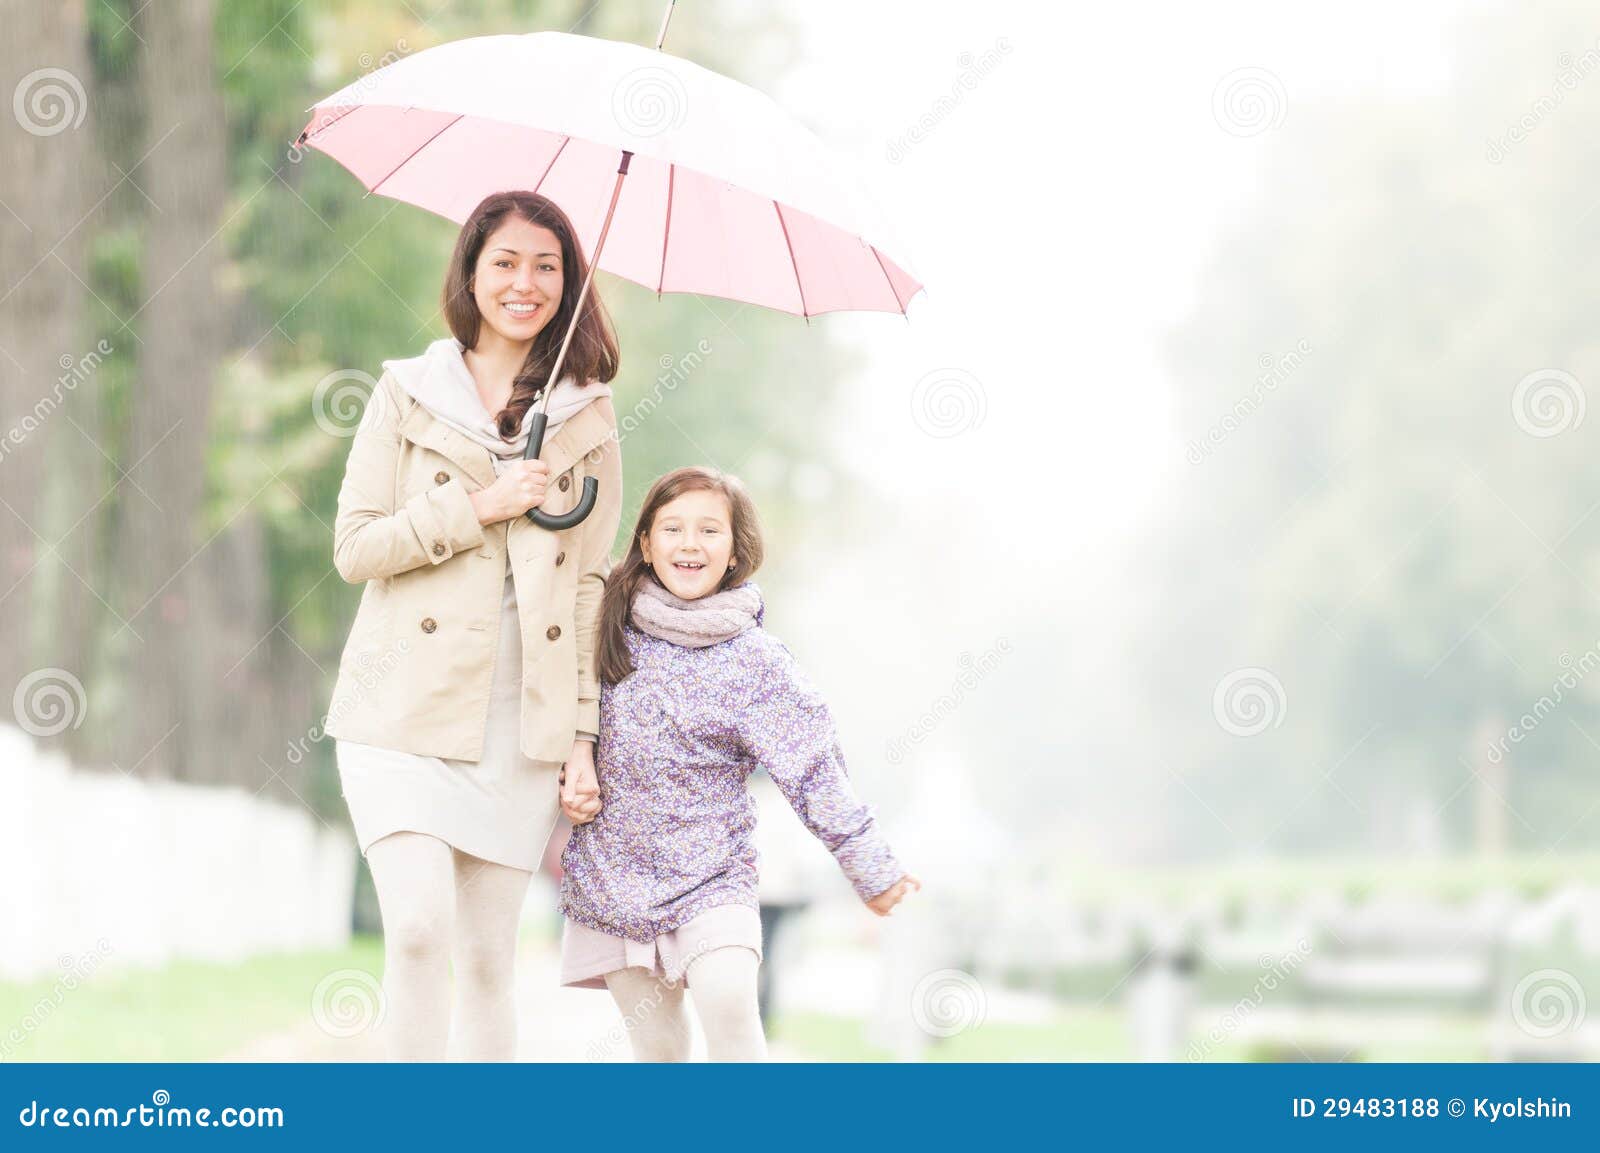 Мама зонтик. Мать с дочерью под зонтиком. Дети с мамой зонтики. Дочь и мама под зонтом. Мама и дети под зонтиком.